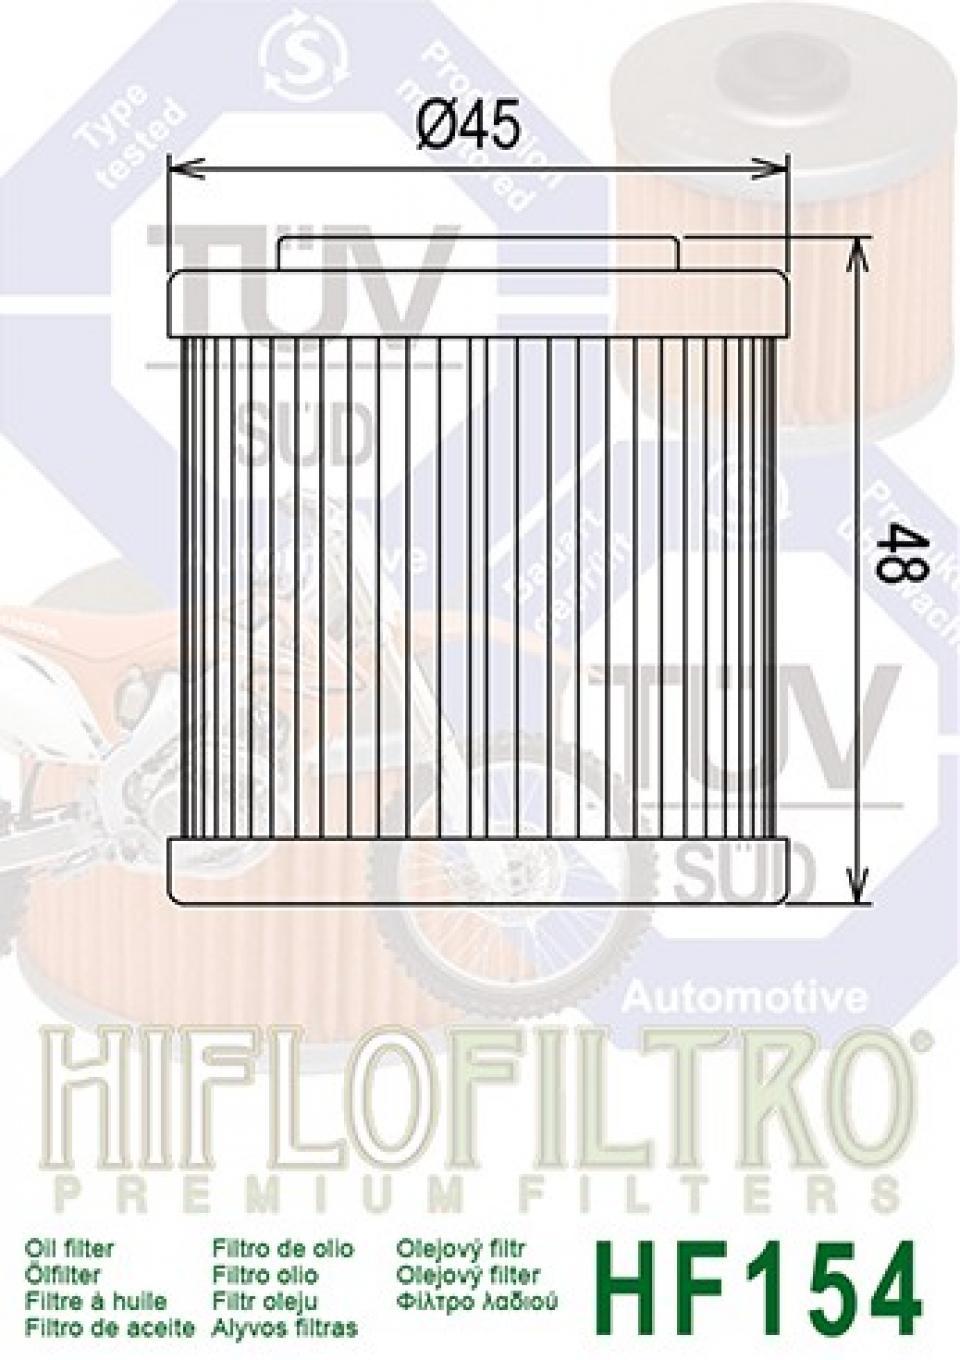 Filtre à huile Hiflo Filtro pour Moto Husqvarna 510 SMR 2005-2007 Neuf